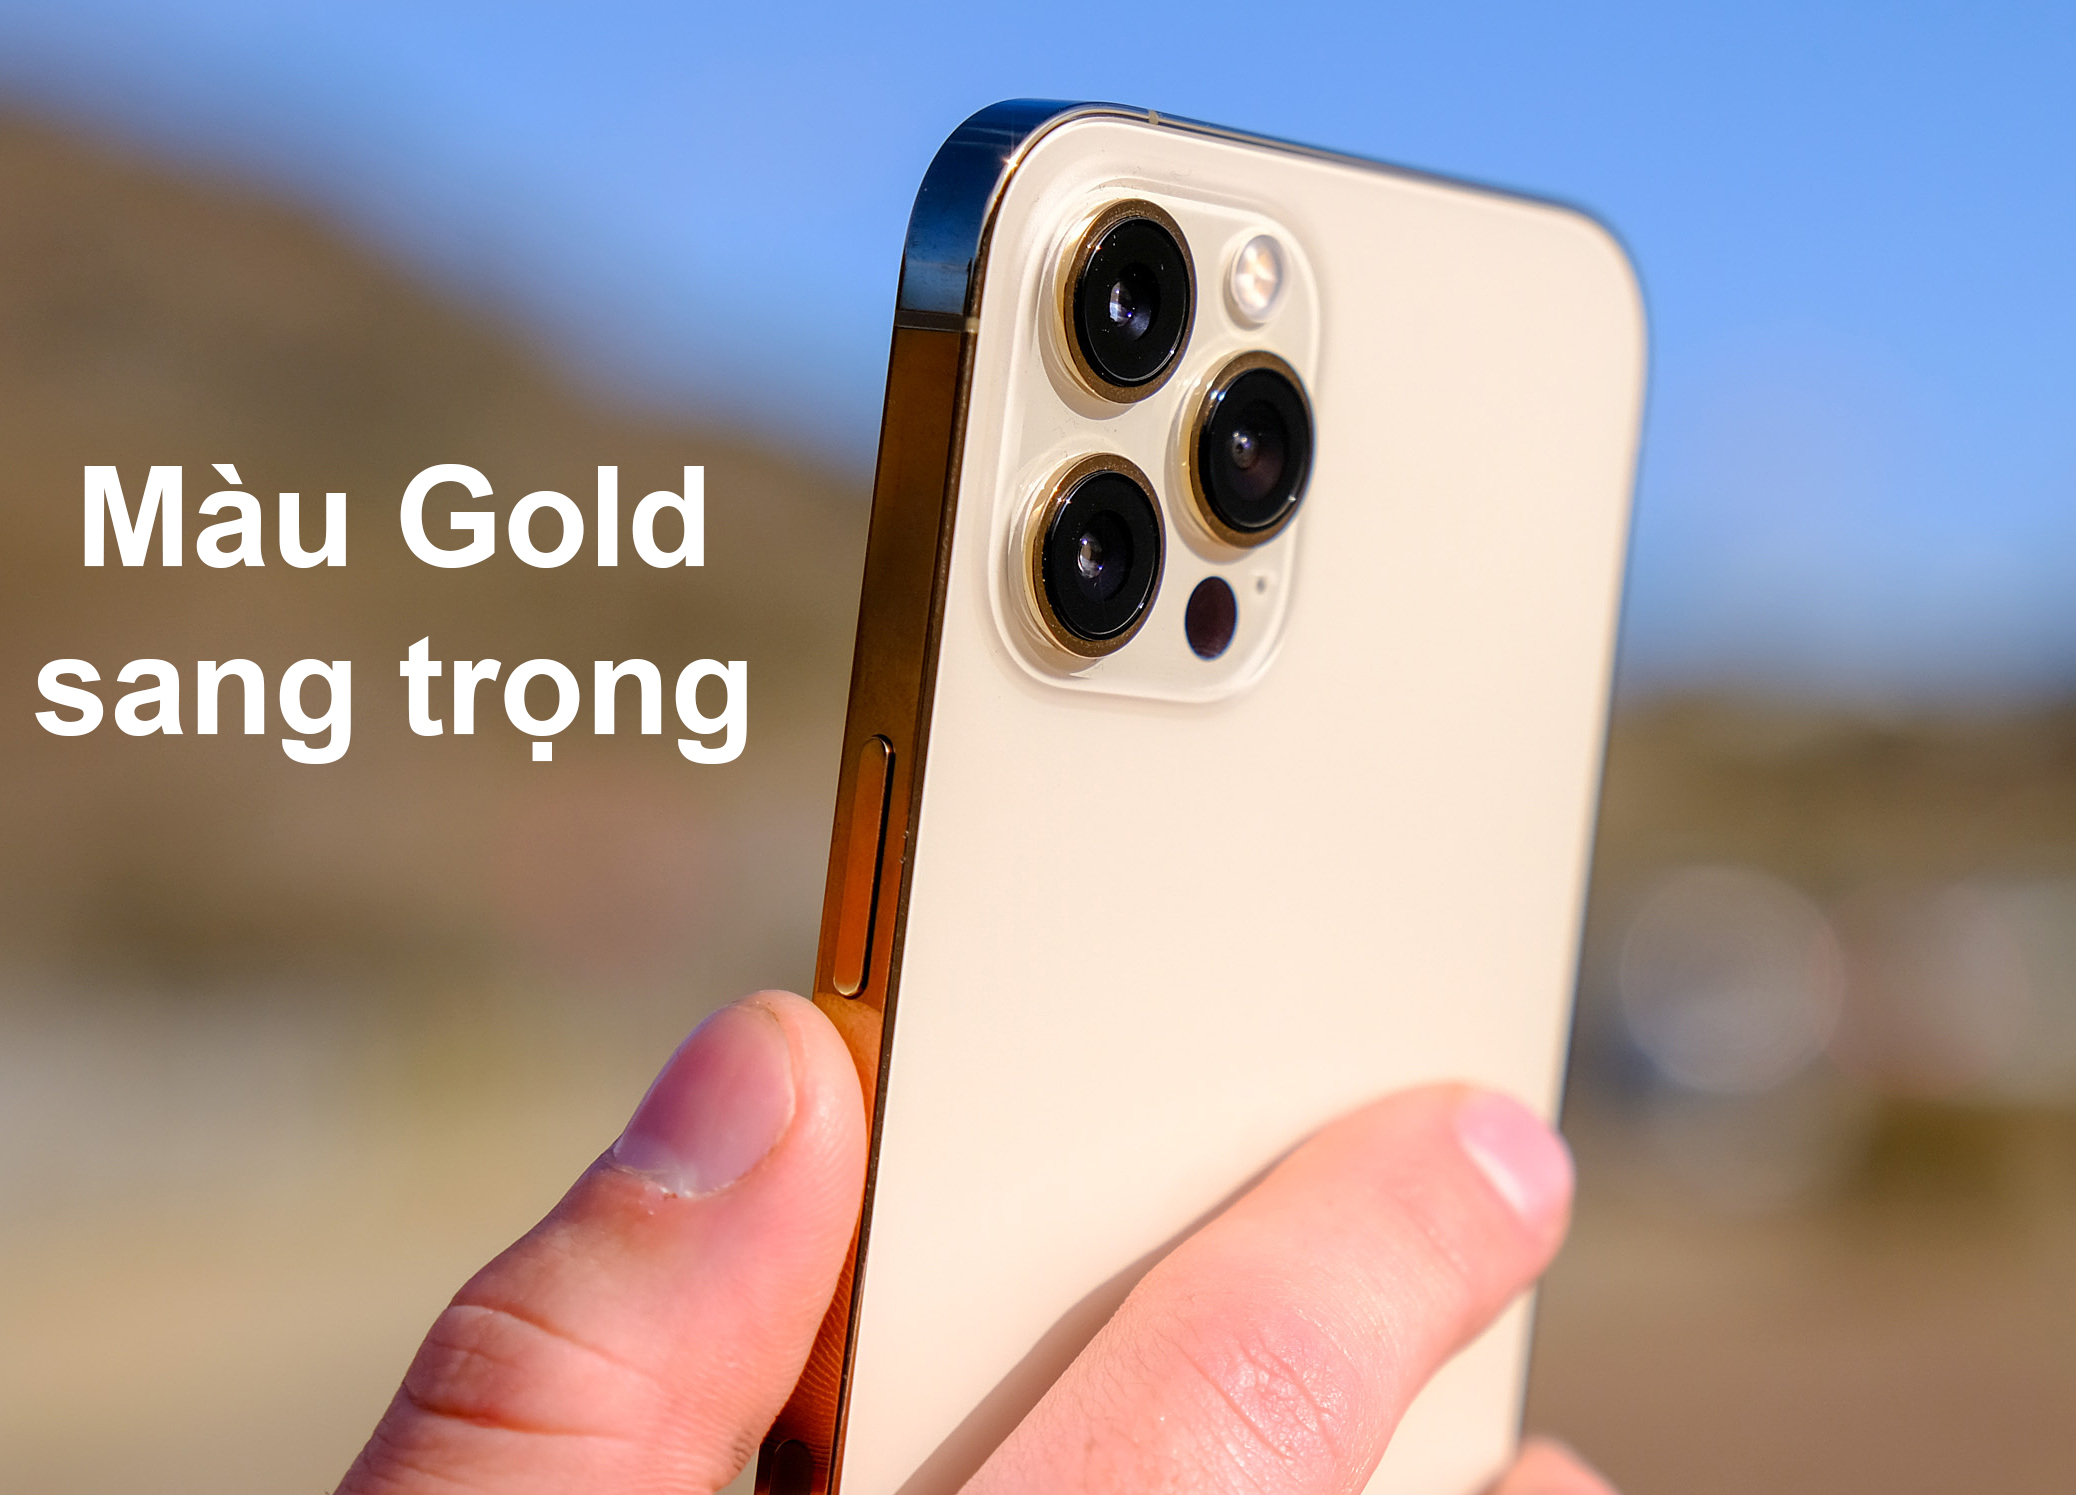 iPhone 12 Pro Max 256 GB | Màu Gold sang trọng